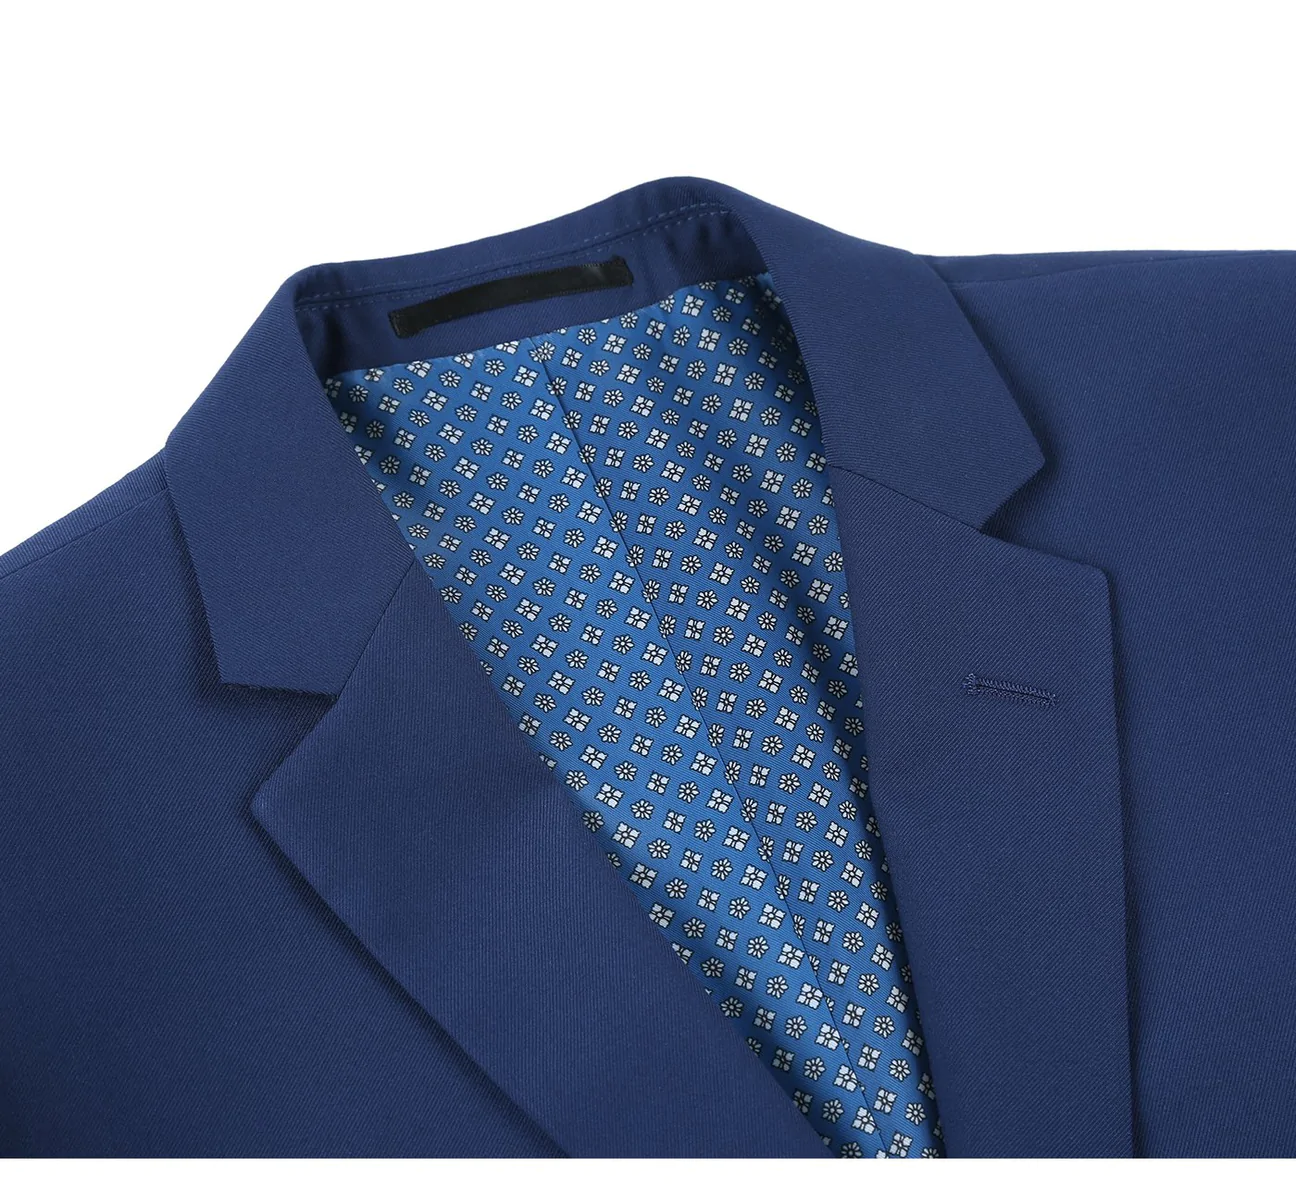 Royal Blue 2-Piece Single Breasted Notch Lapel Suit Alex_Cobalt